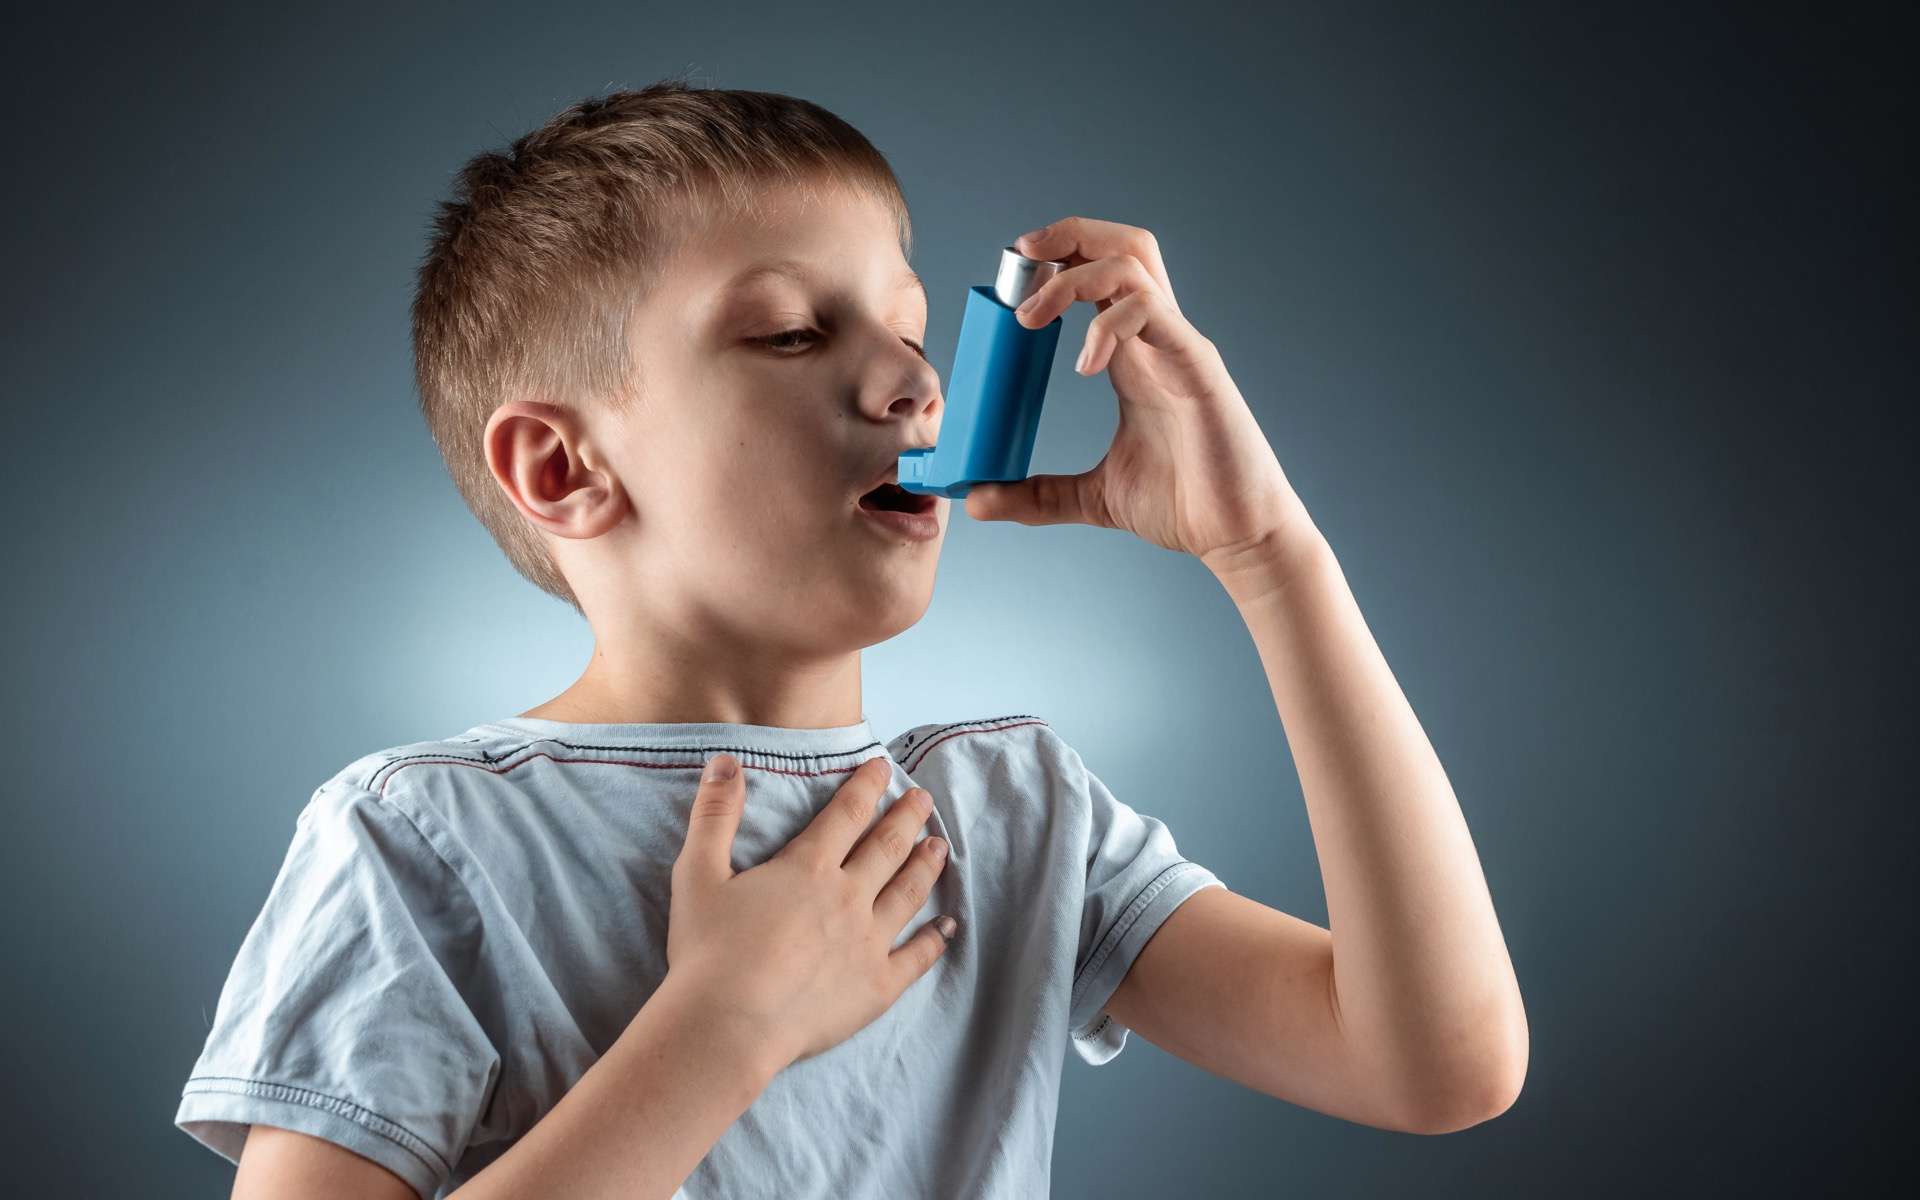 Votre Guide Pour Comprendre Et Gérer Les Symptômes De L'Asthme